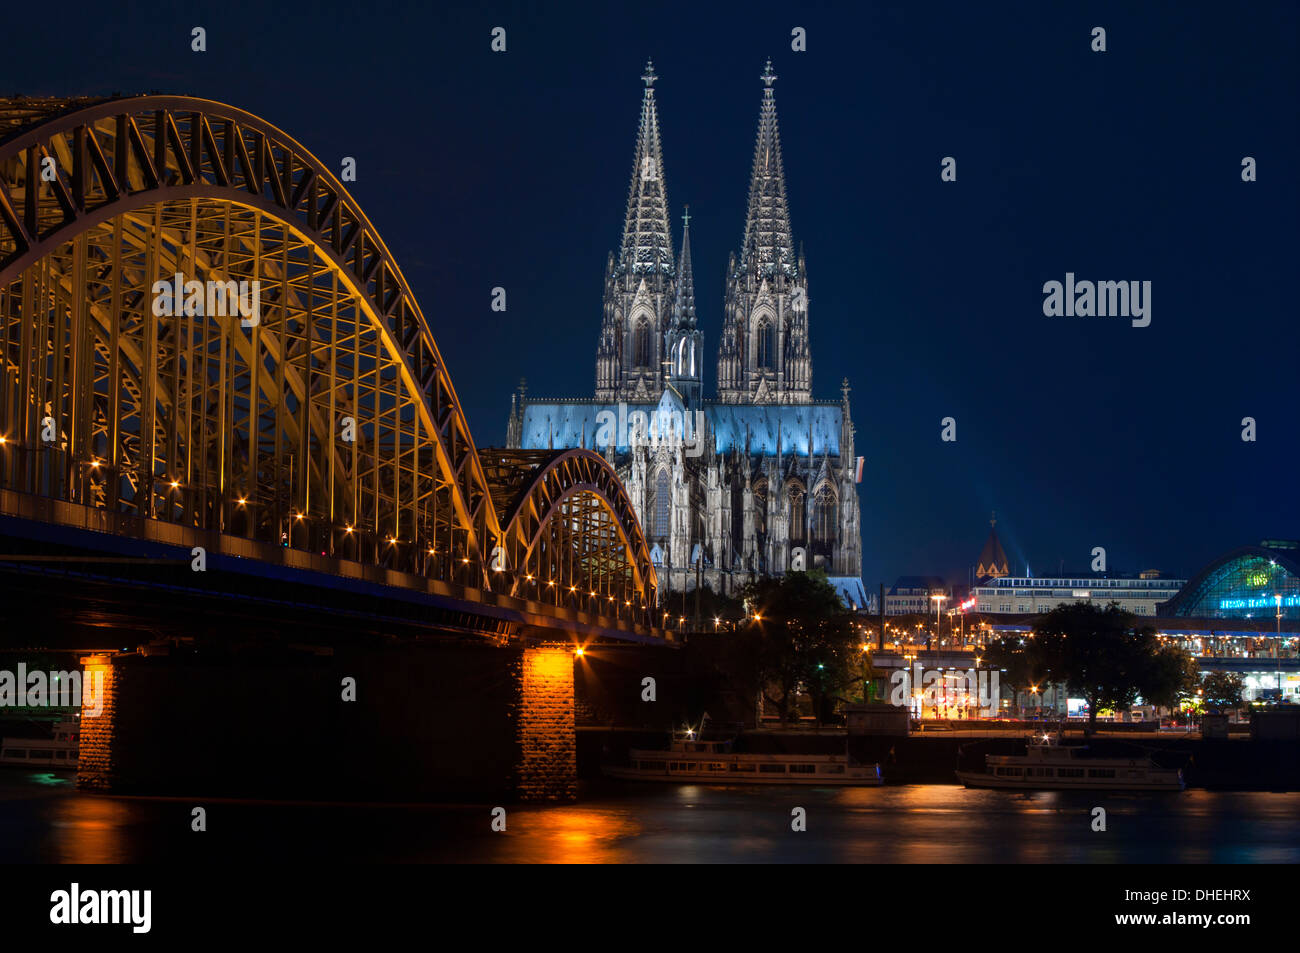 La cathédrale de Cologne, classée au Patrimoine Mondial de l'UNESCO, et pont Hohenzollern au crépuscule, Cologne, Germany, Europe Banque D'Images